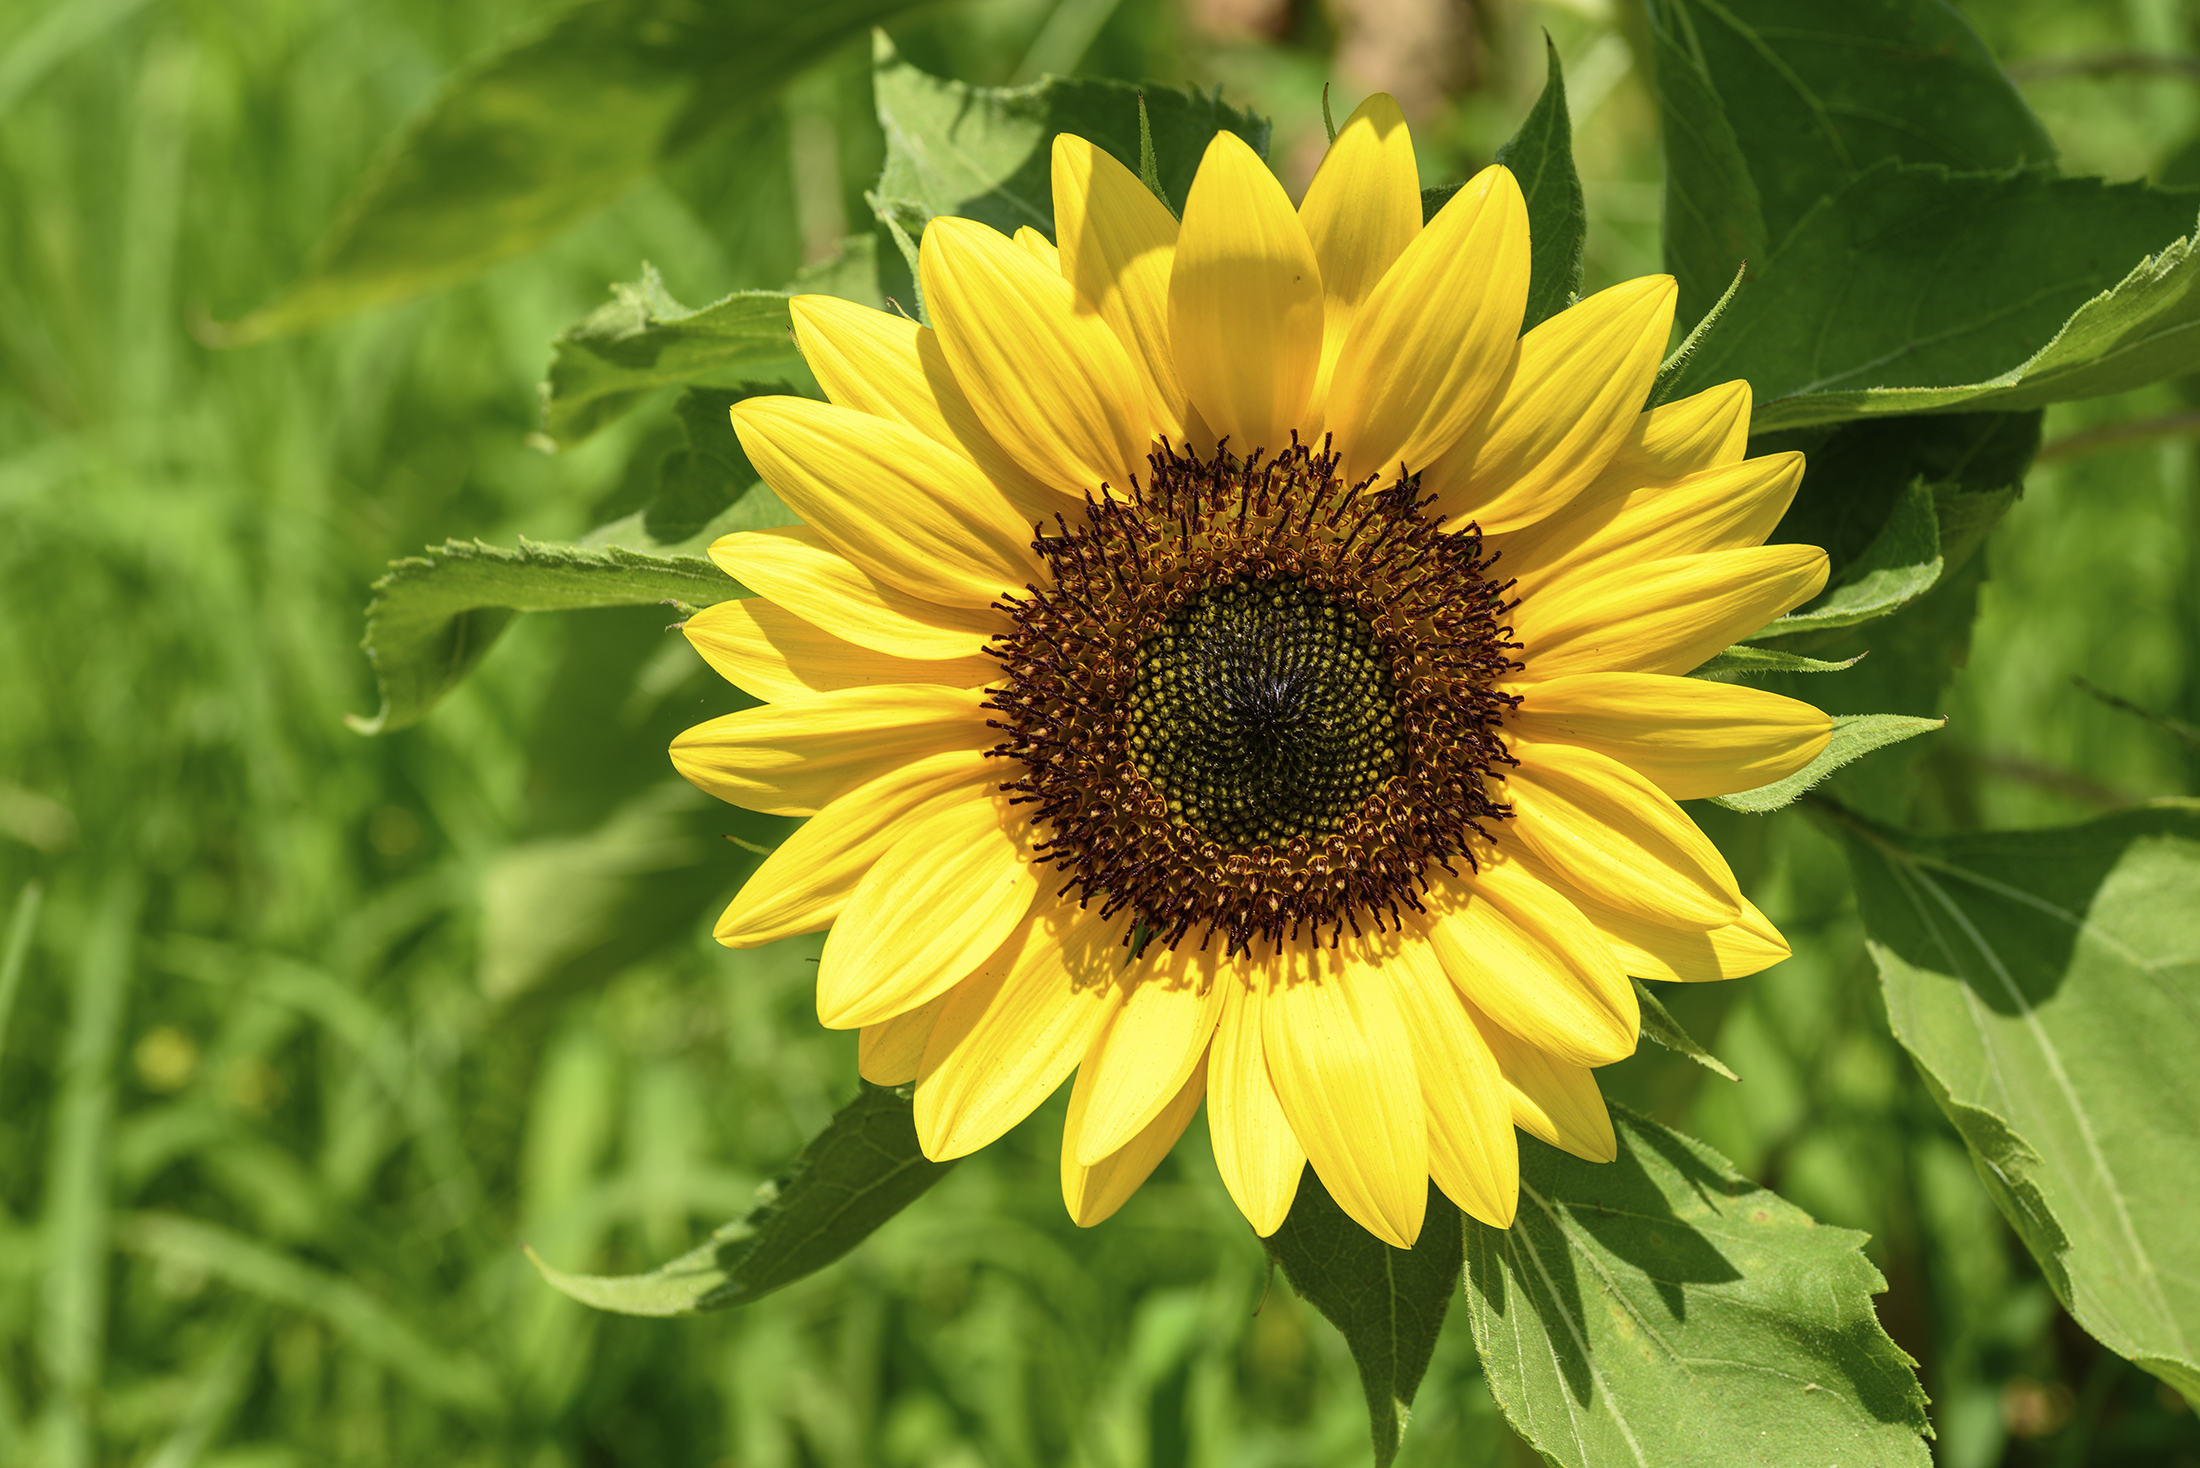 Auringonkukka on pihan piristys – Näin saat sen kukoistamaan kotipuutarhassa